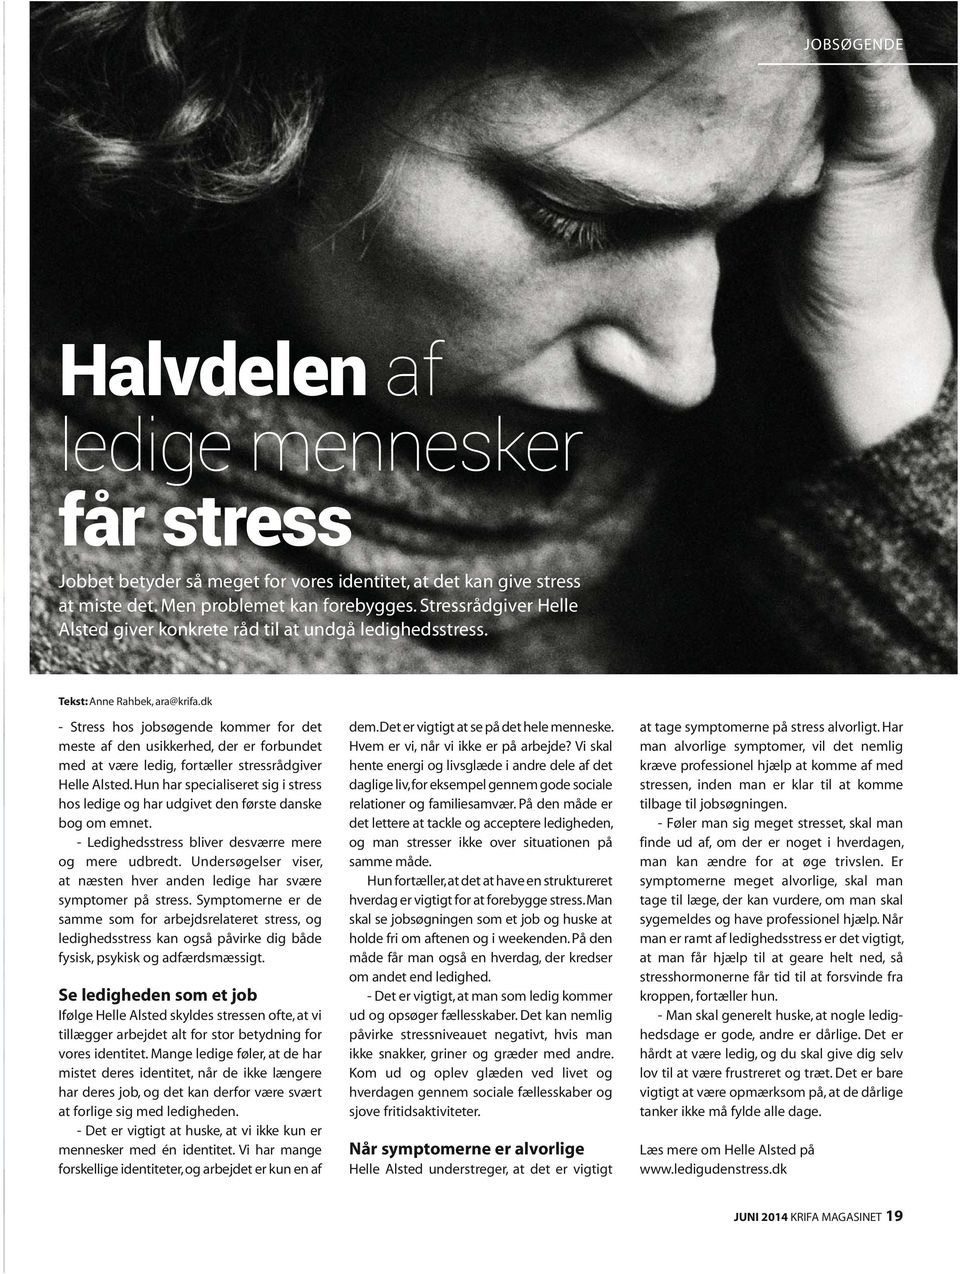 dk - Stress hos jobsøgende kommer for det meste af den usikkerhed, der er forbundet med at være ledig, fortæller stressrådgiver Helle Alsted.